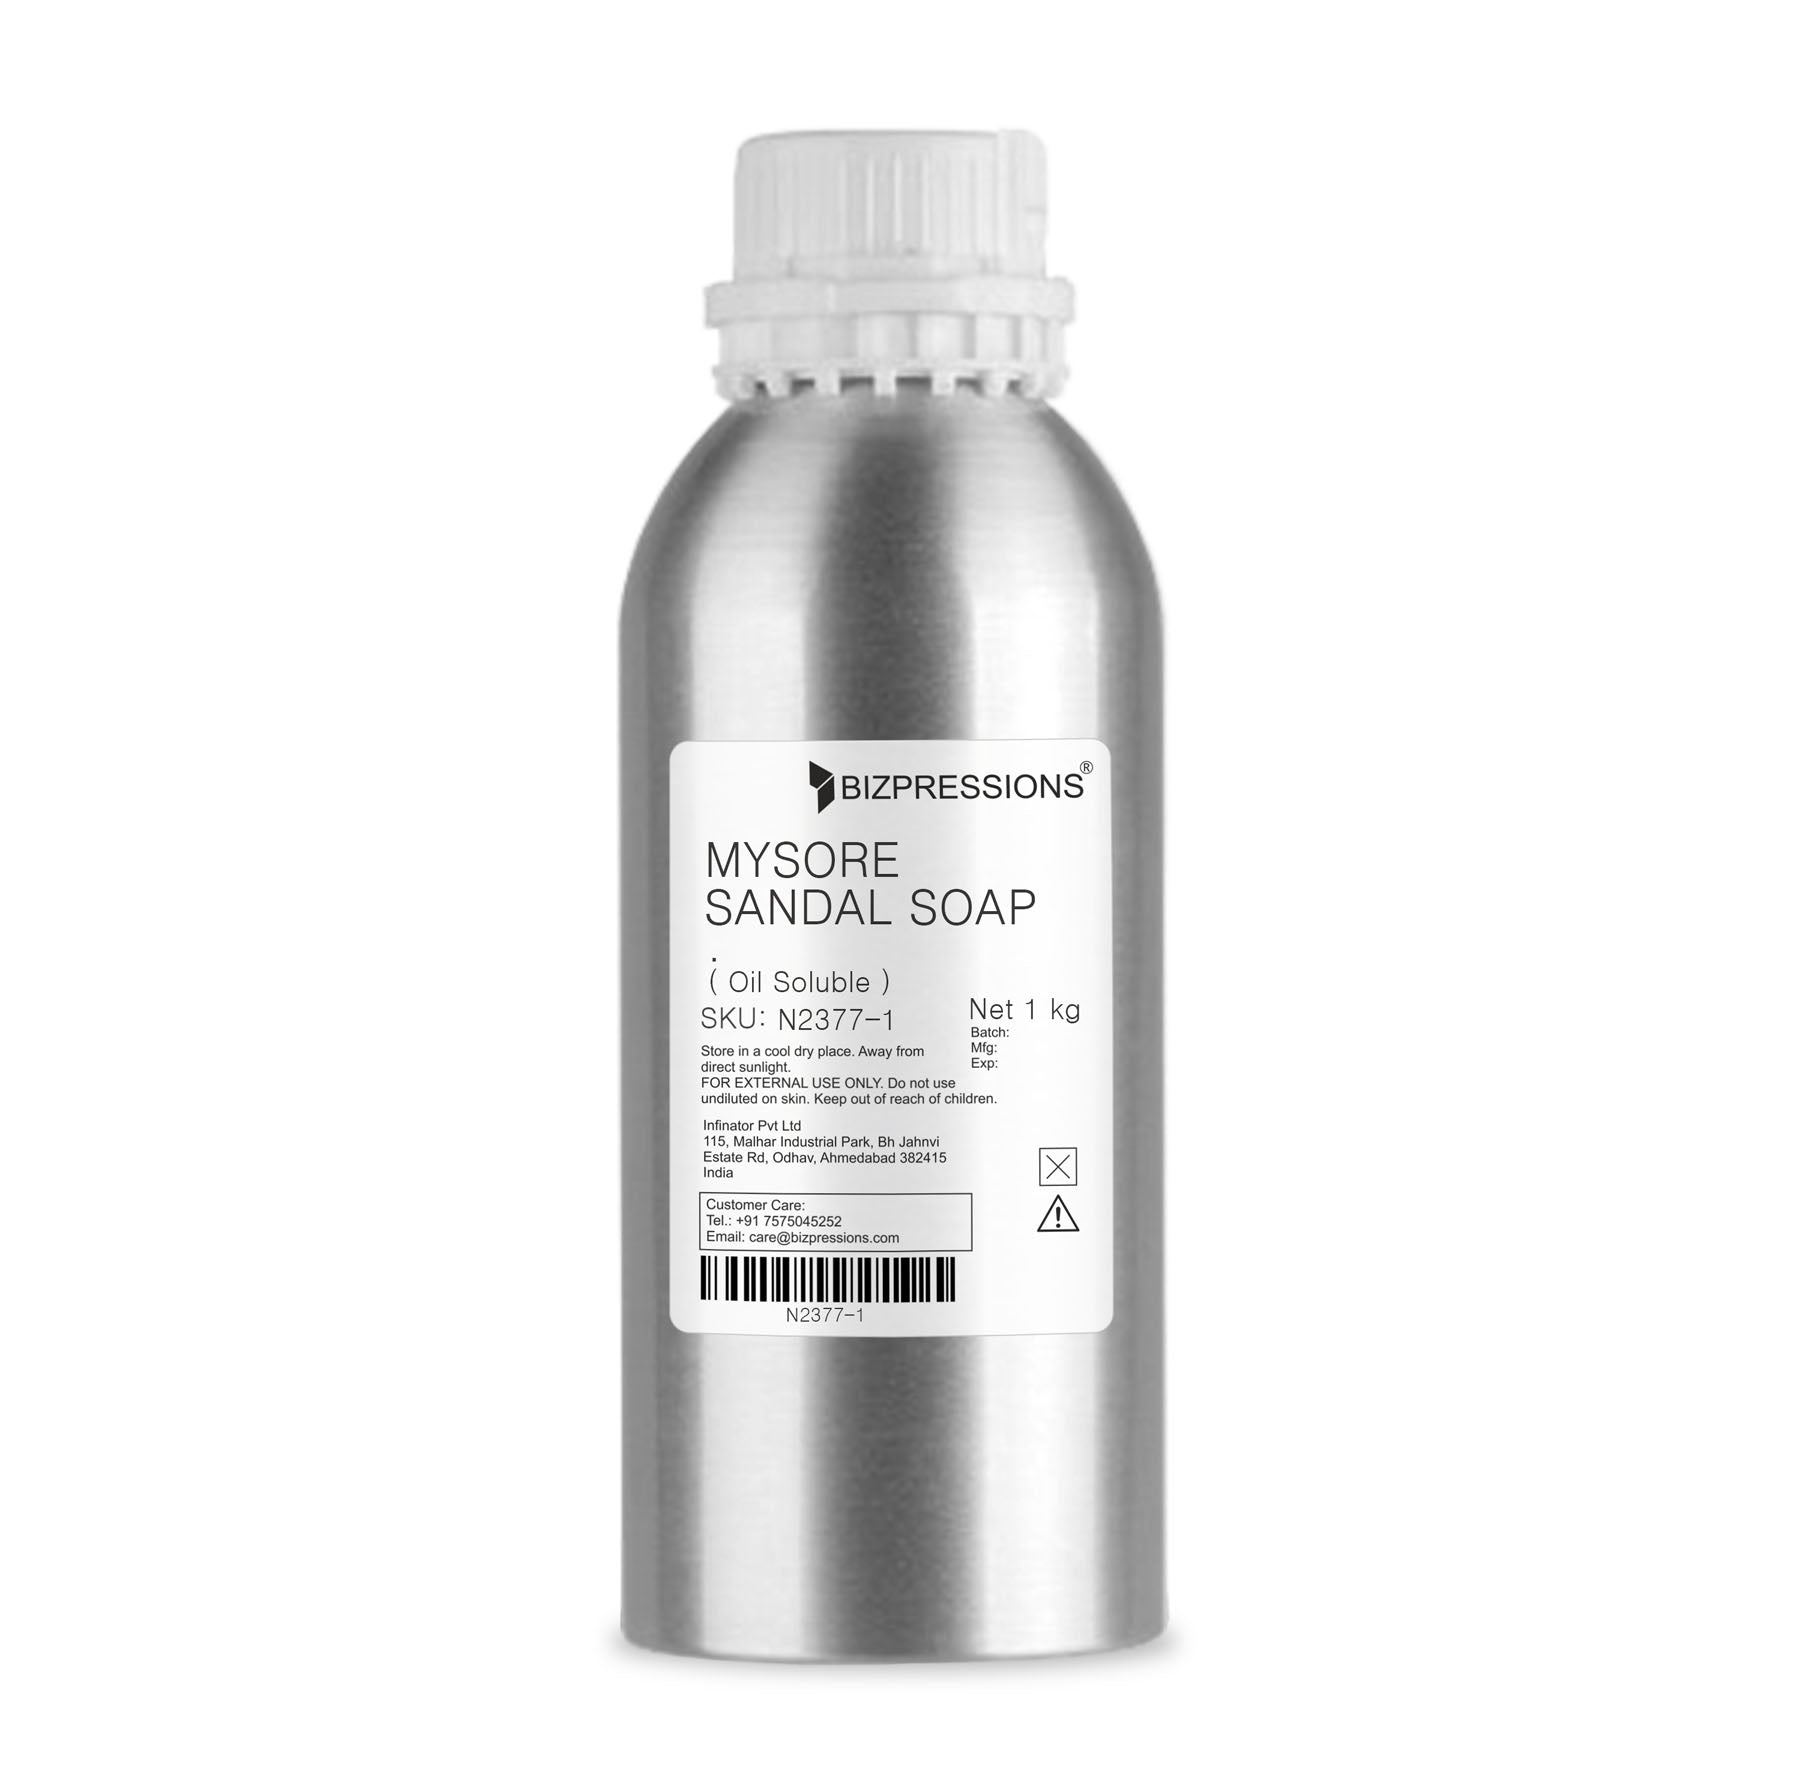 MYSORE SANDAL SOAP - Fragrance ( Oil Soluble ) - 1 kg